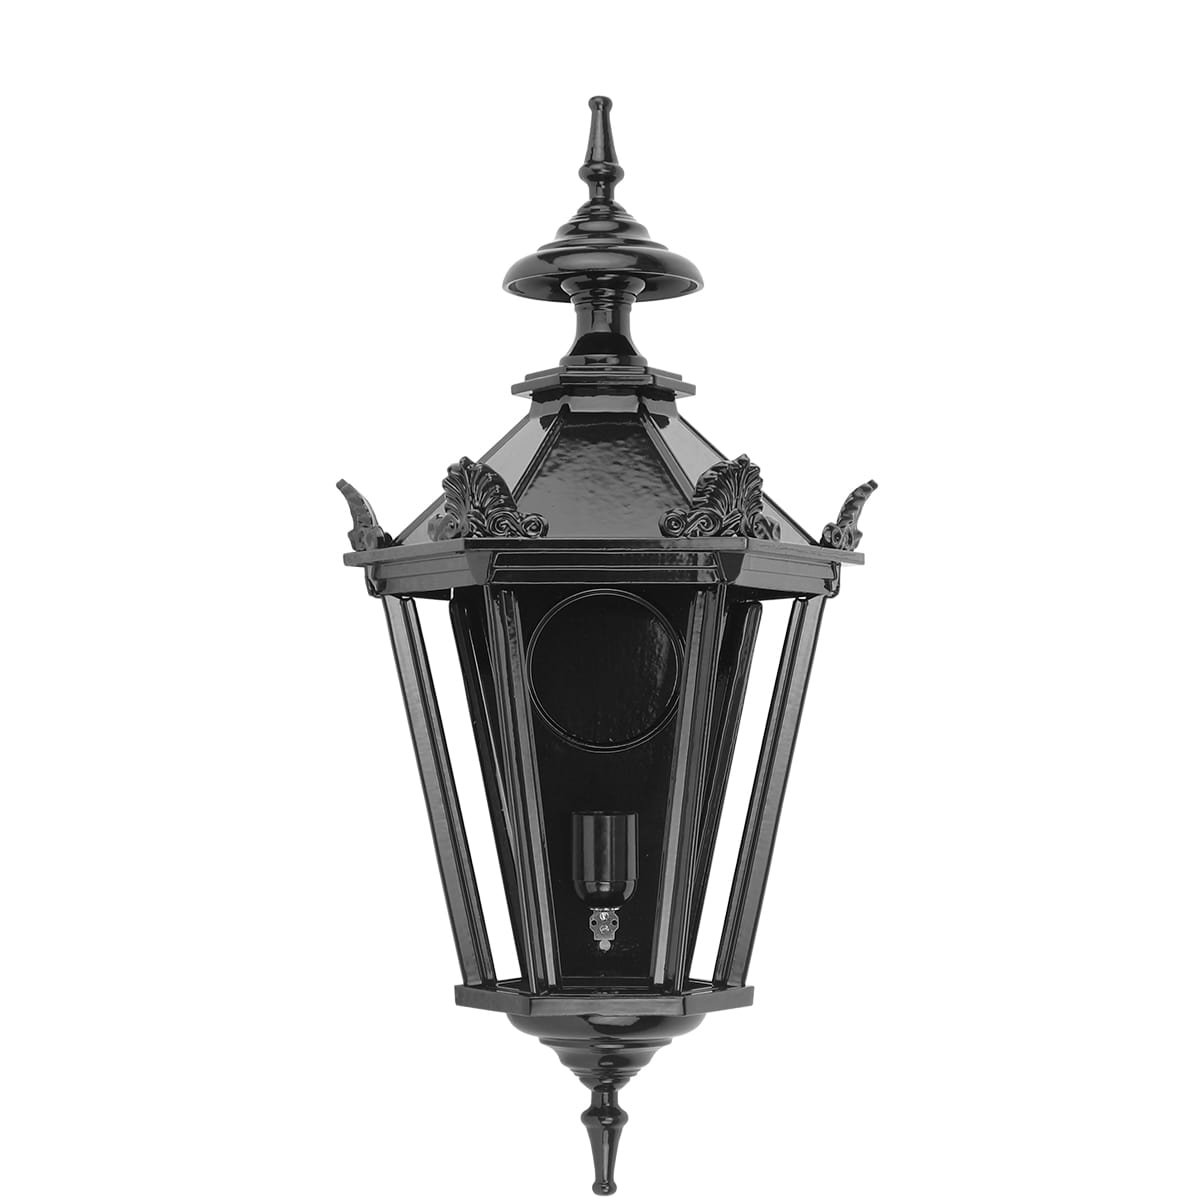 Muurlamp Zwolle met kronen M - 52 cm